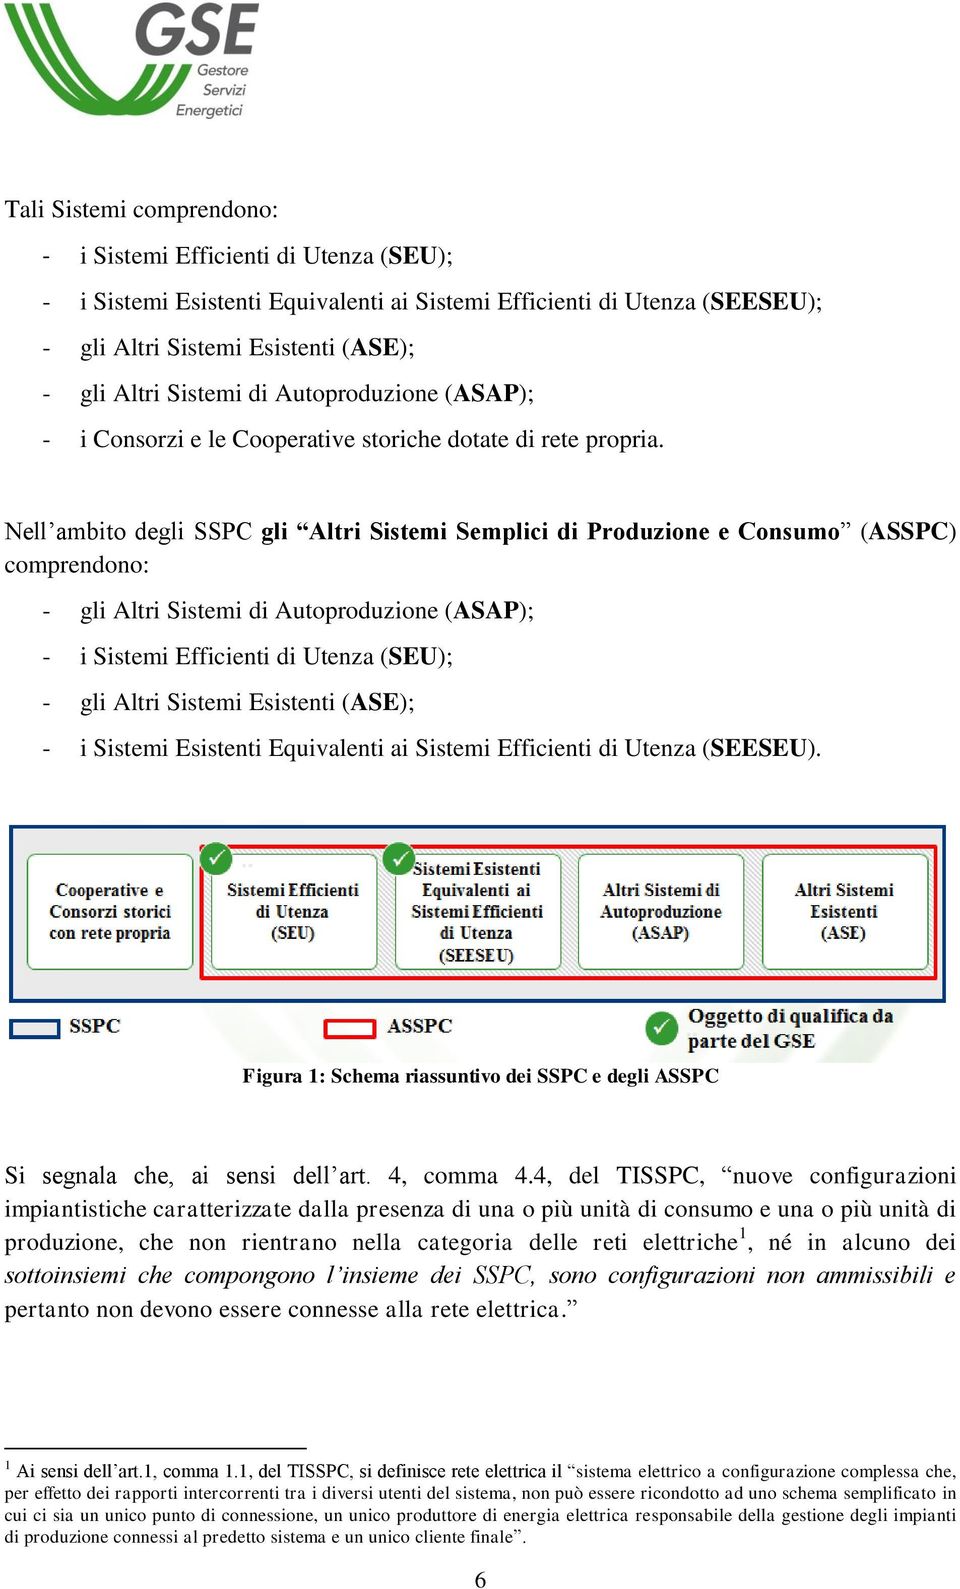 Nell ambito degli SSPC gli Altri Sistemi Semplici di Produzione e Consumo (ASSPC) comprendono: - gli Altri Sistemi di Autoproduzione (ASAP); - i Sistemi Efficienti di Utenza (SEU); - gli Altri